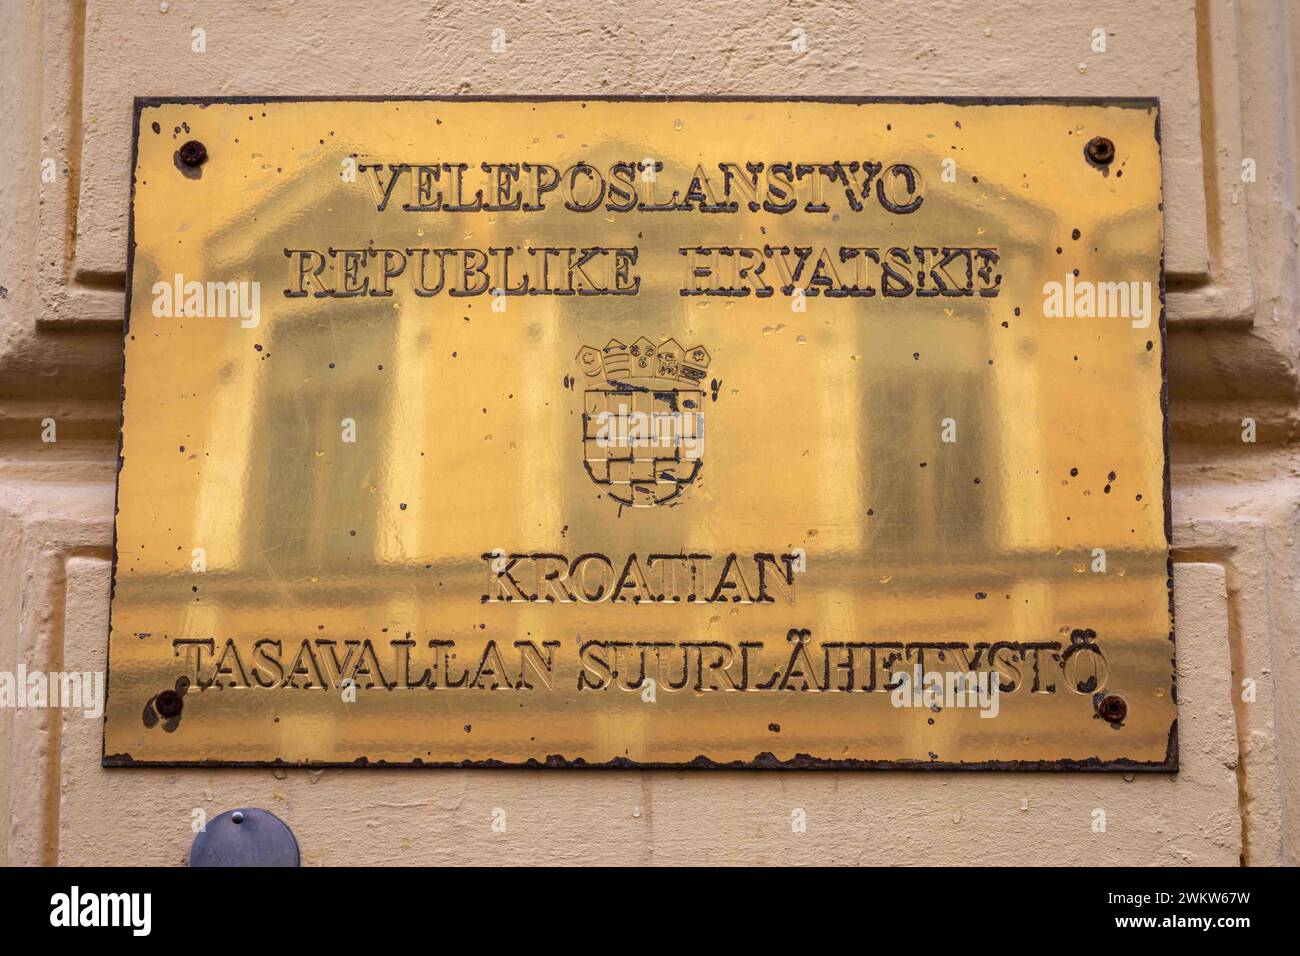 Veleposlanstvo Republike Hrvatske ou ambassade de la République de Croatie signe sur le mur à Helsinki, Finlande Banque D'Images